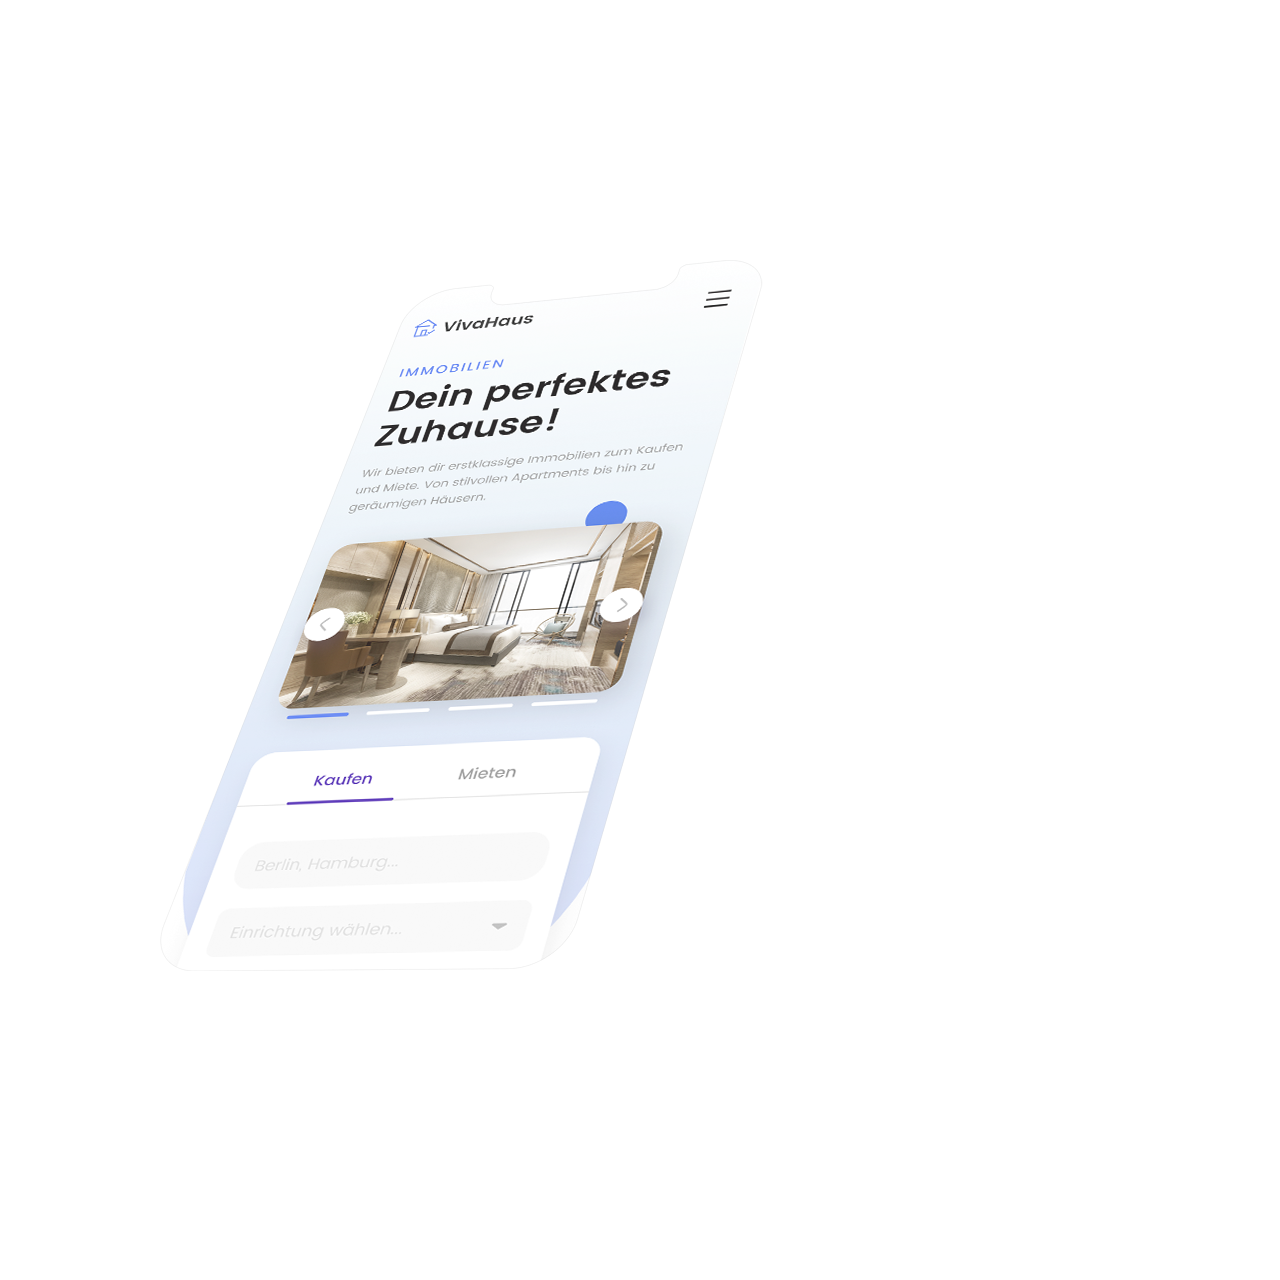 Modernes Immobilien-Webdesign auf einem Smartphone